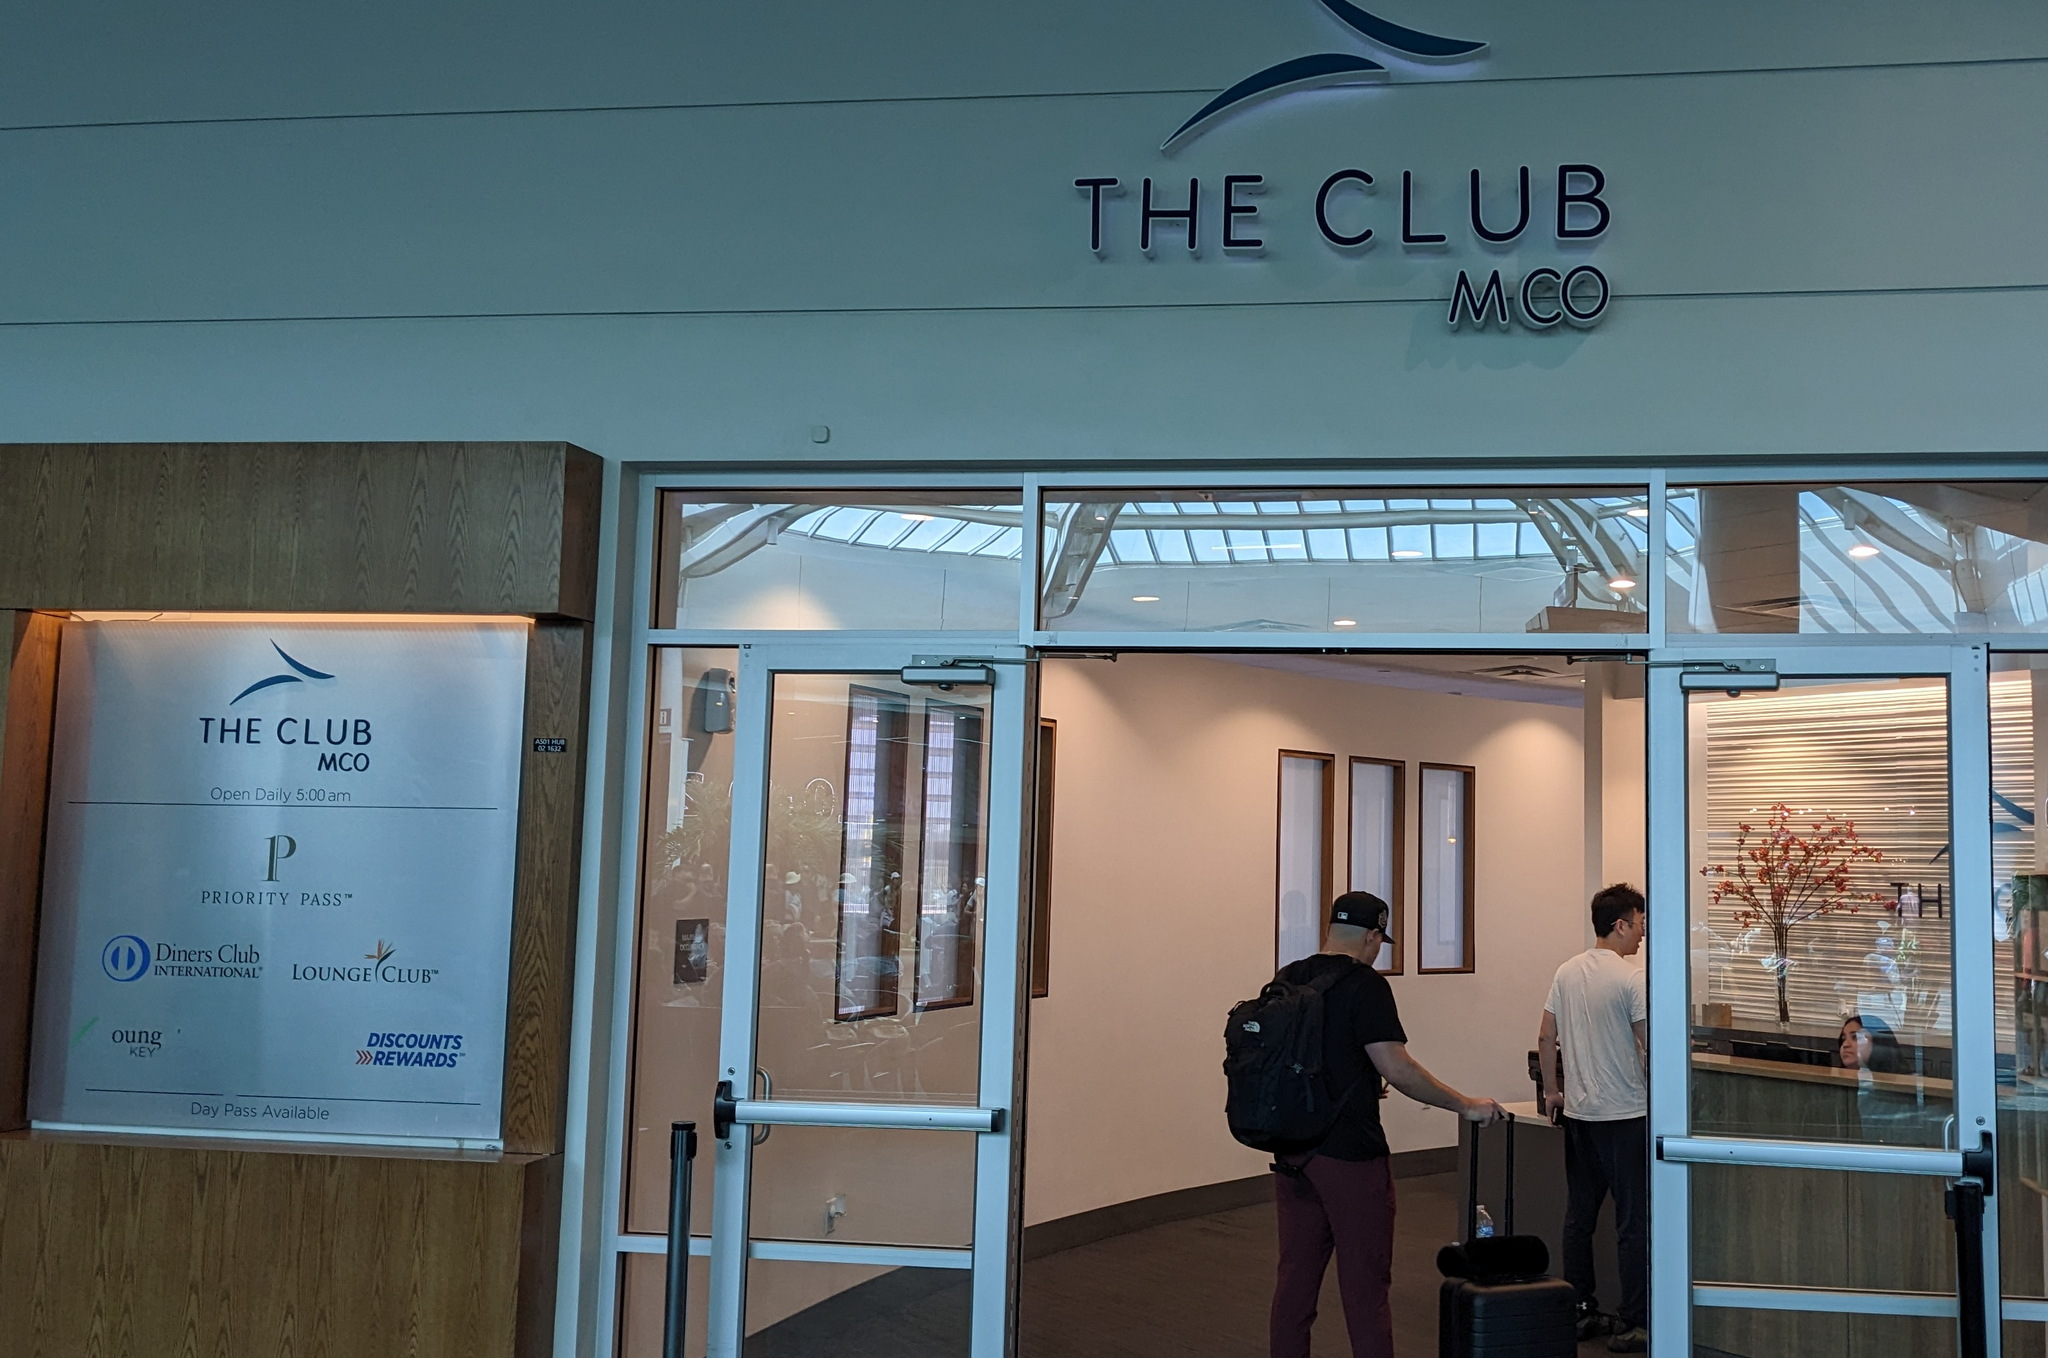 entrance of The Club Orlando (A Terminal)